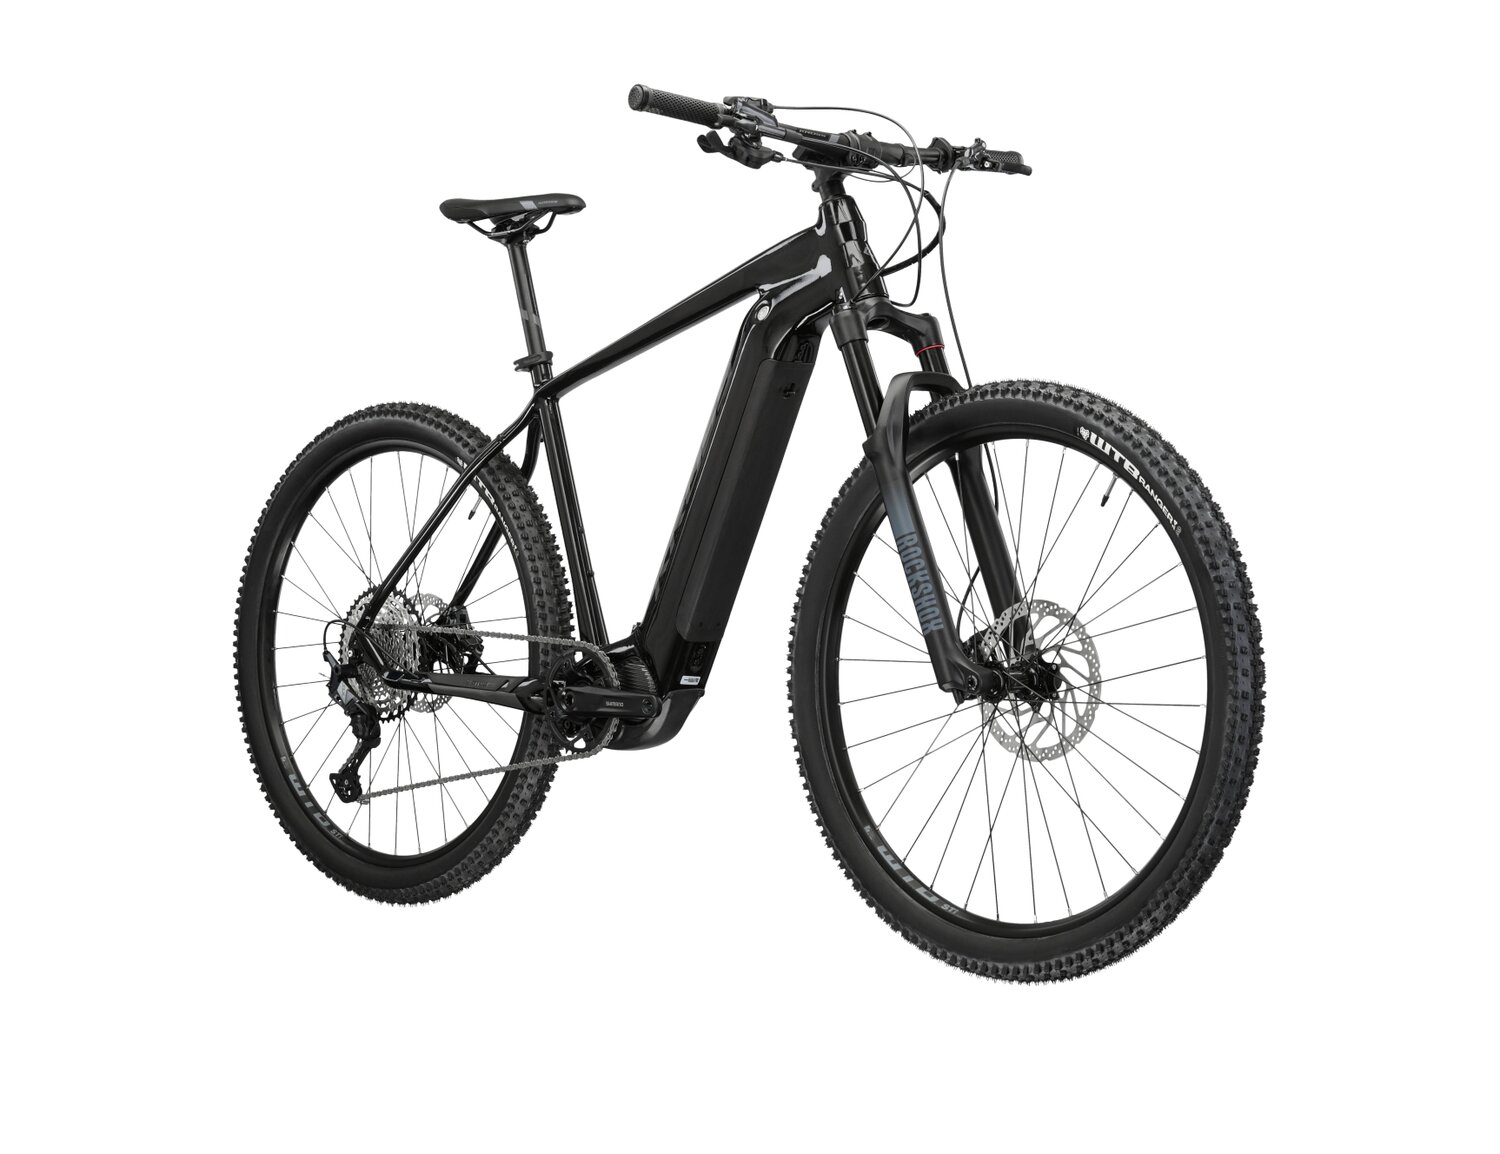  Elektryczny rower górski Ebike MTB XC KROSS Level Boost 3.0 630 Wh na aluminiowej ramie w kolorze czarnym wyposażony w osprzęt Shimano i napęd elektryczny Shimano 